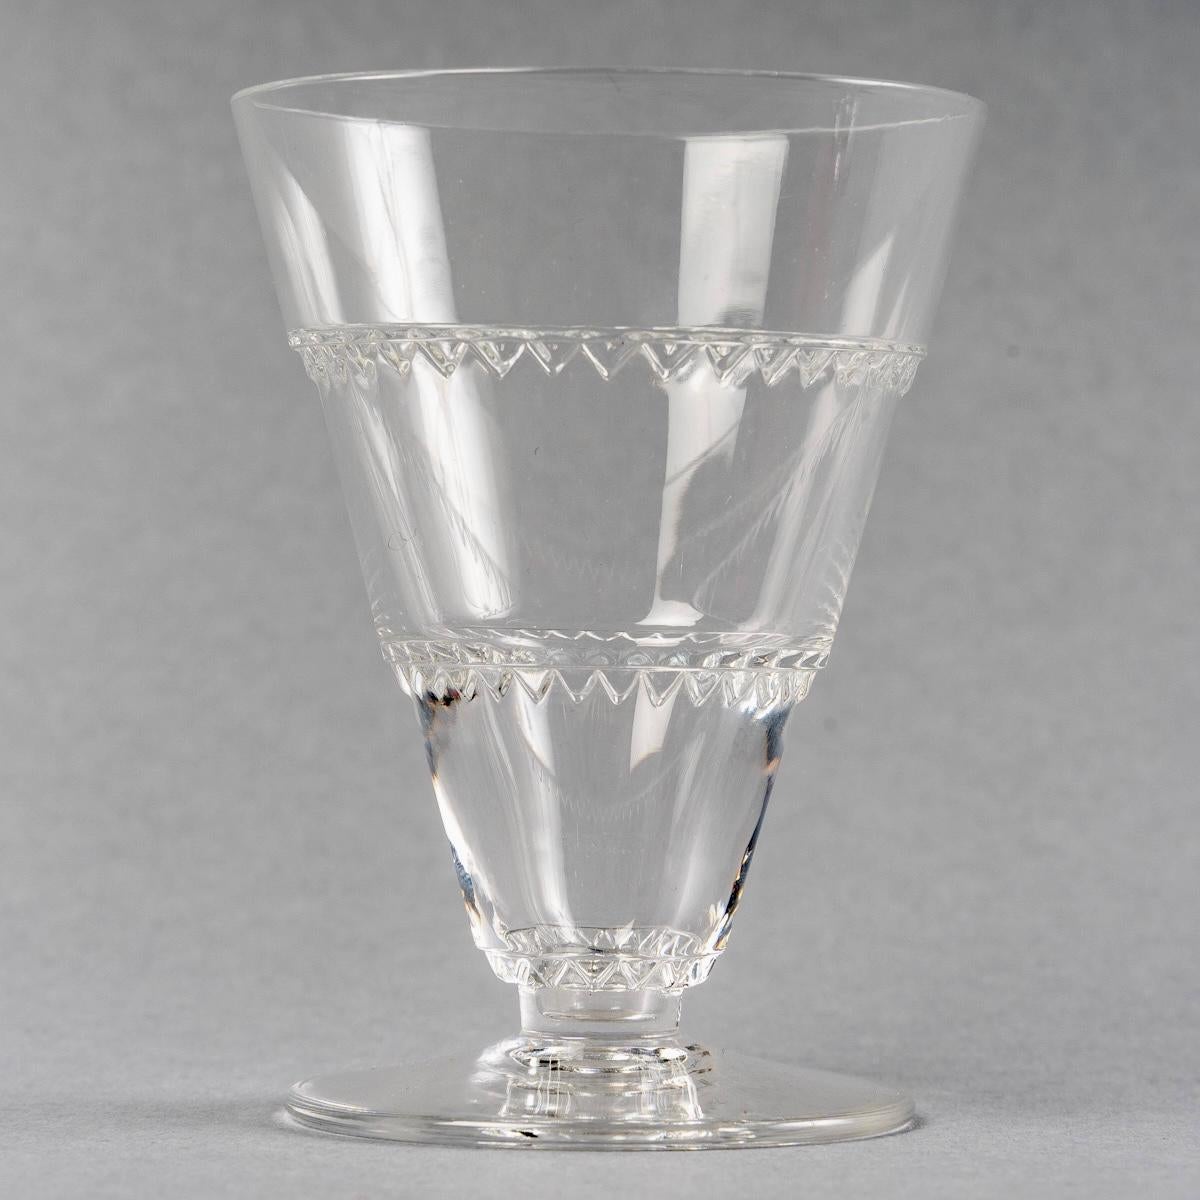 1932 René Lalique Set of Glasses Decanter Pitcher Vouvray Clear Glass 42 Pieces 7